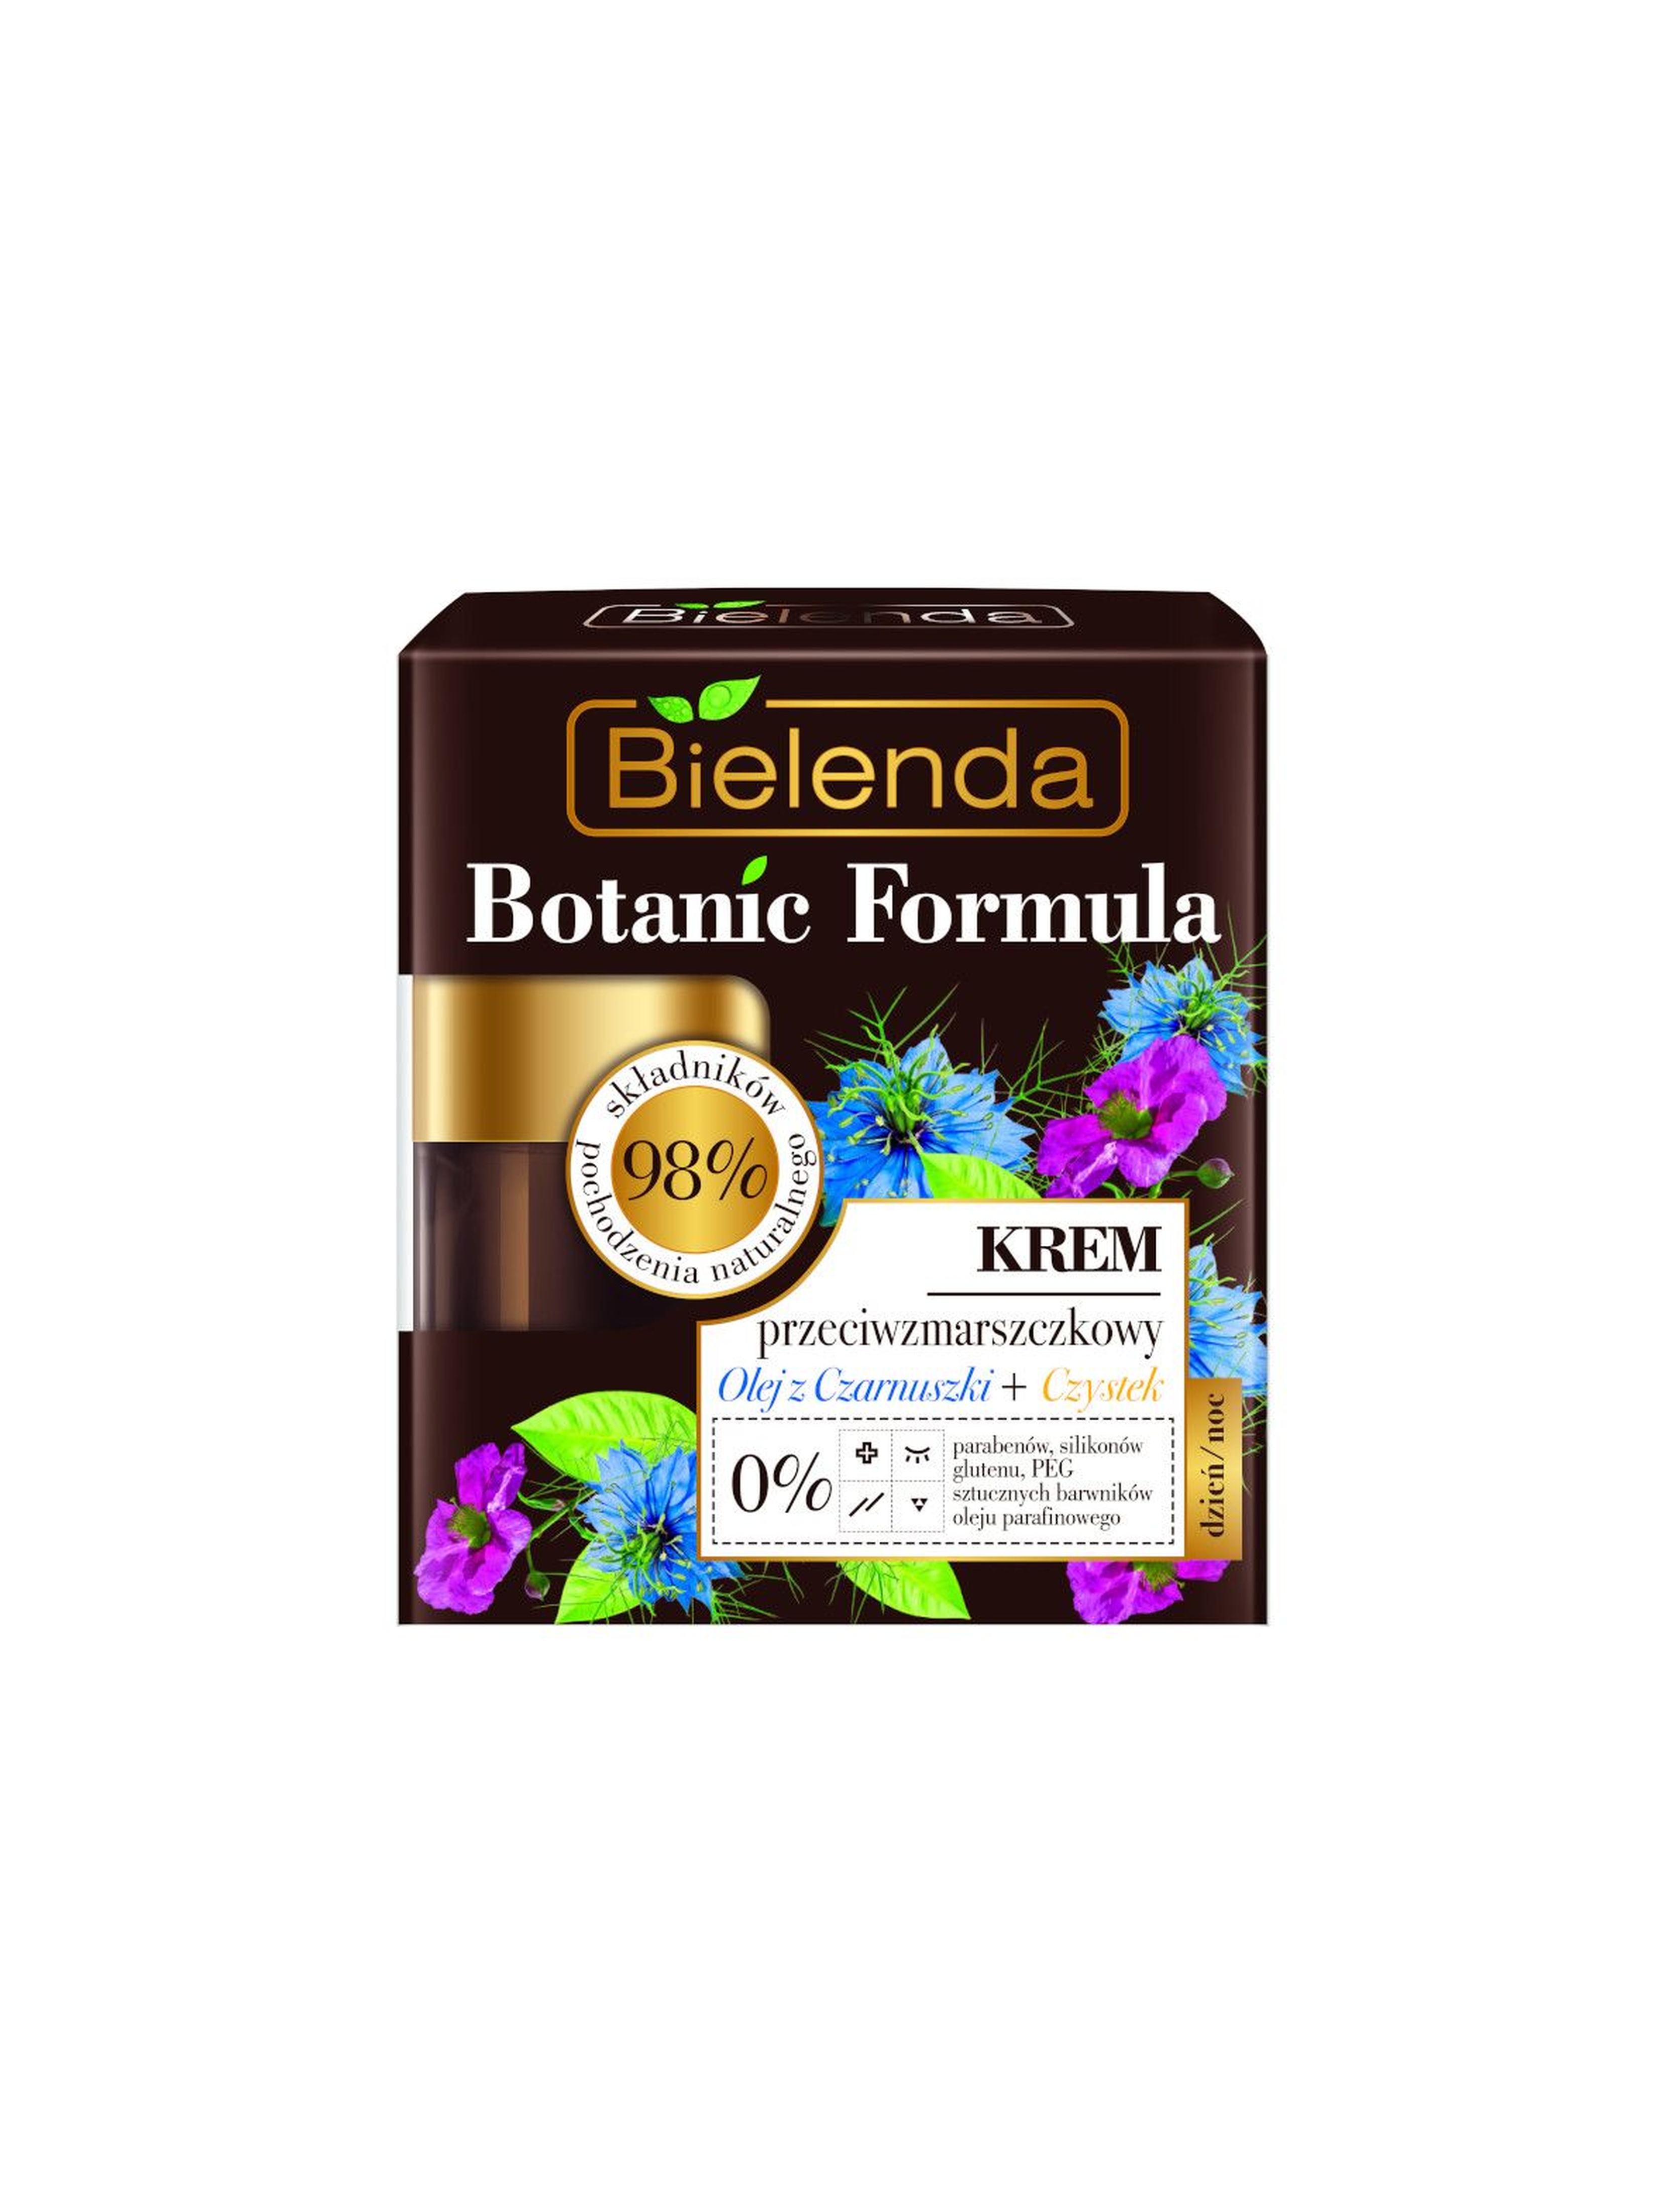 BOTANIC FORMULA Olej z Czarnuszki + Czystek Krem przeciwzmarszczkowy dzień/ noc - 50 ml